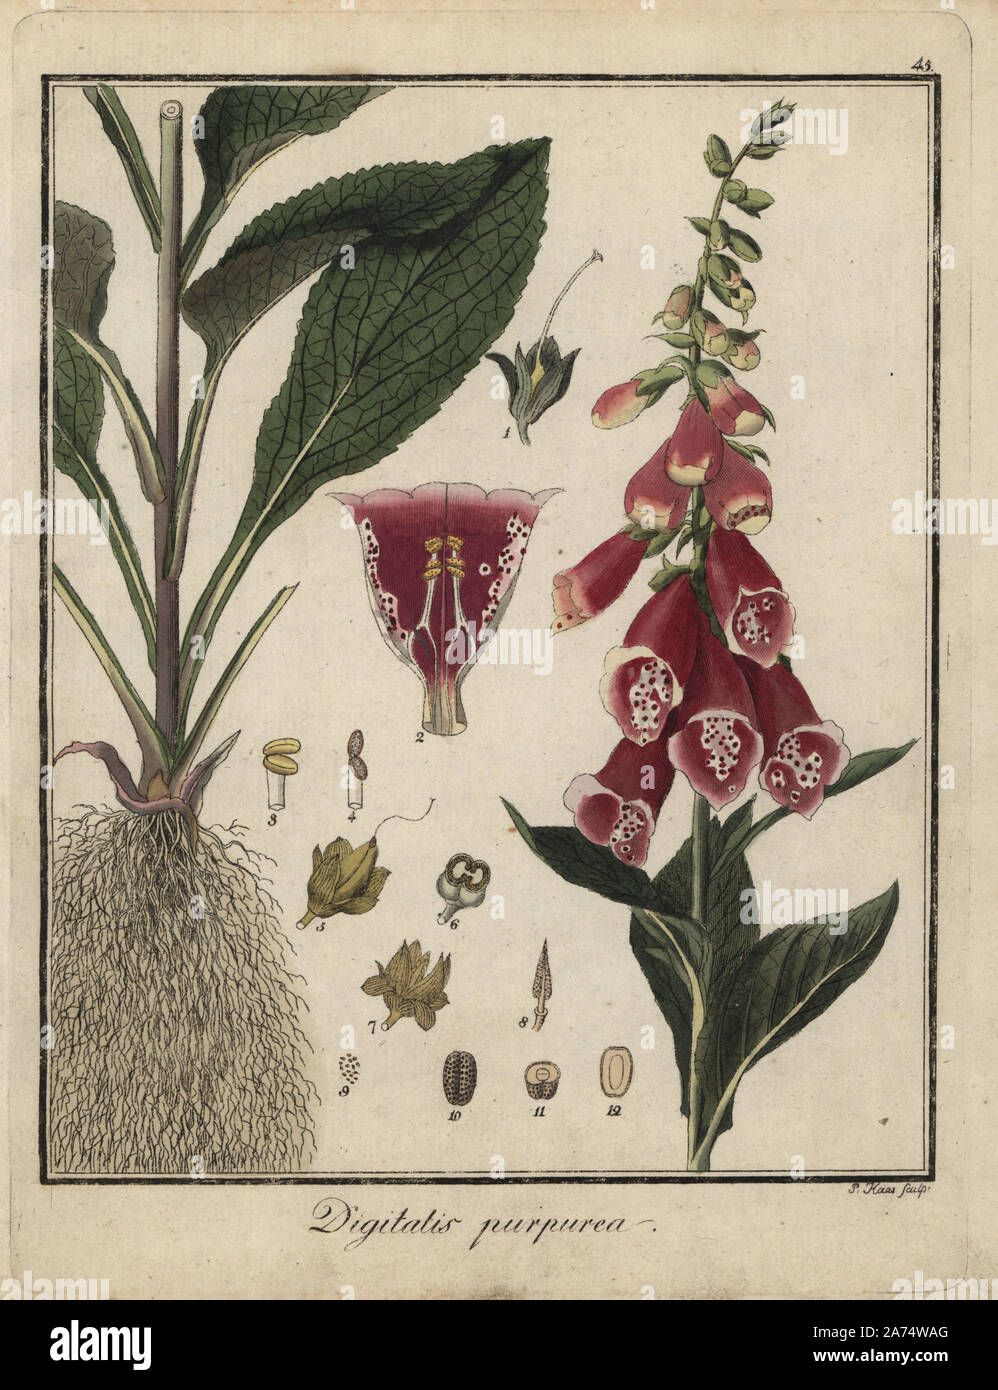 La digitale pourpre, Digitalis purpurea. La gravure sur cuivre coloriée par P. Haas, de Dr. Friedrich Gottlob Hayne's Botanique Médicale, Berlin, 1822. Hayne (1763-1832) était un botaniste allemand, apothicaire et professeur de botanique pharmaceutique à l'Université de Berlin. Banque D'Images